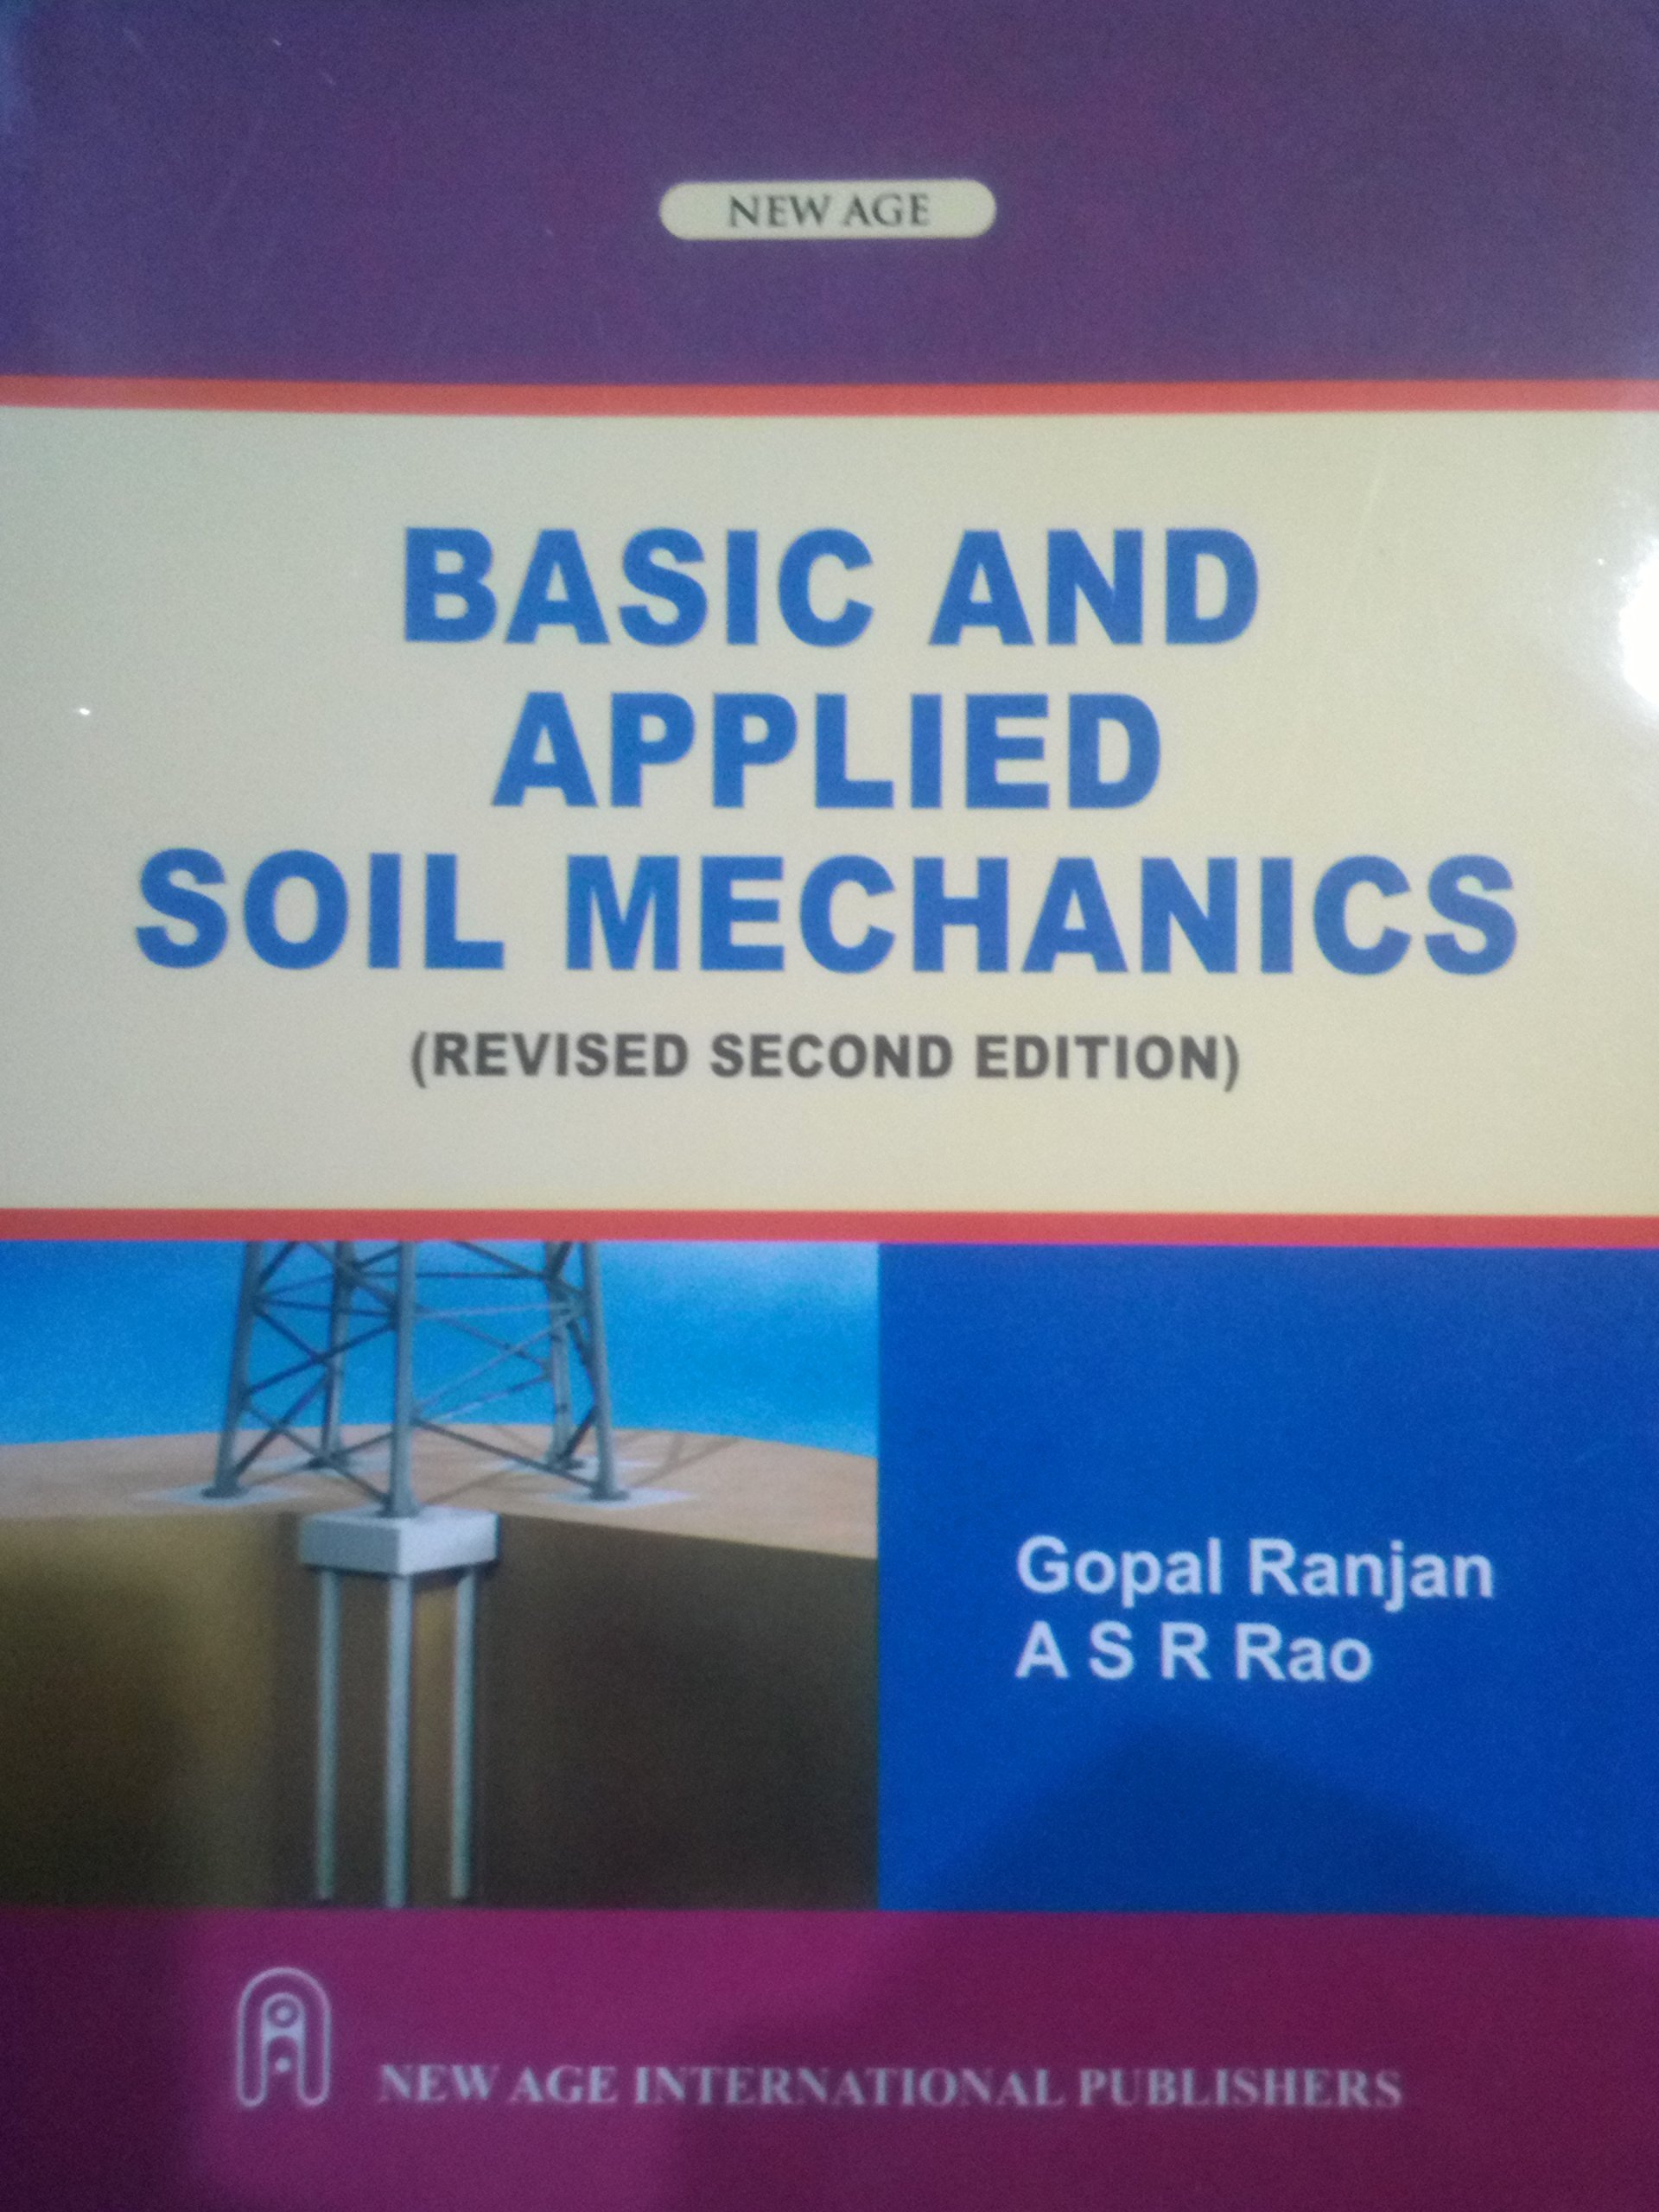 soil mechanics by gopal ranjan pdf reader